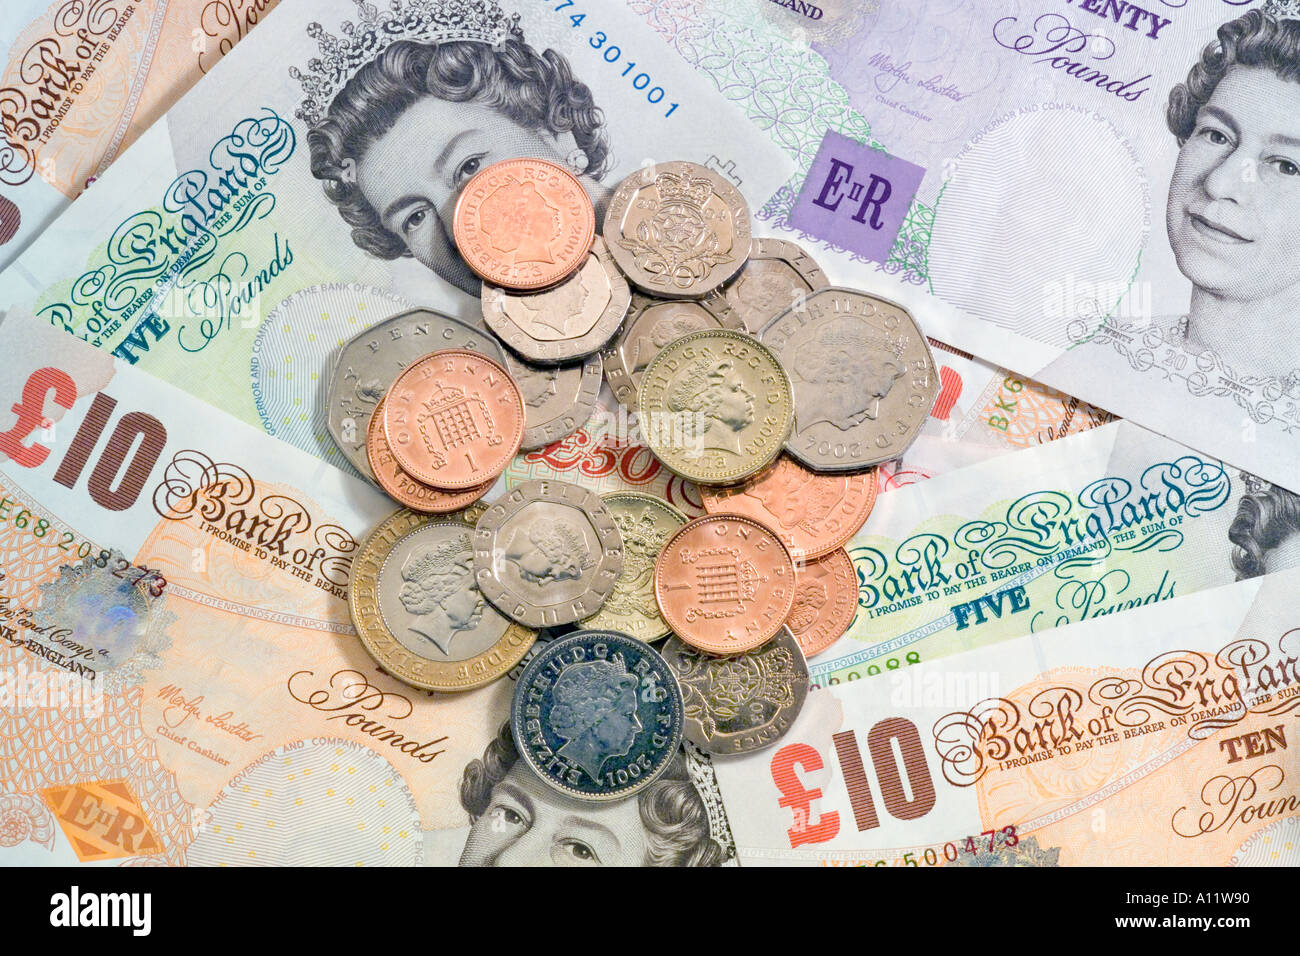 Pile de UK British coins sur les billets de banque britannique Banque D'Images